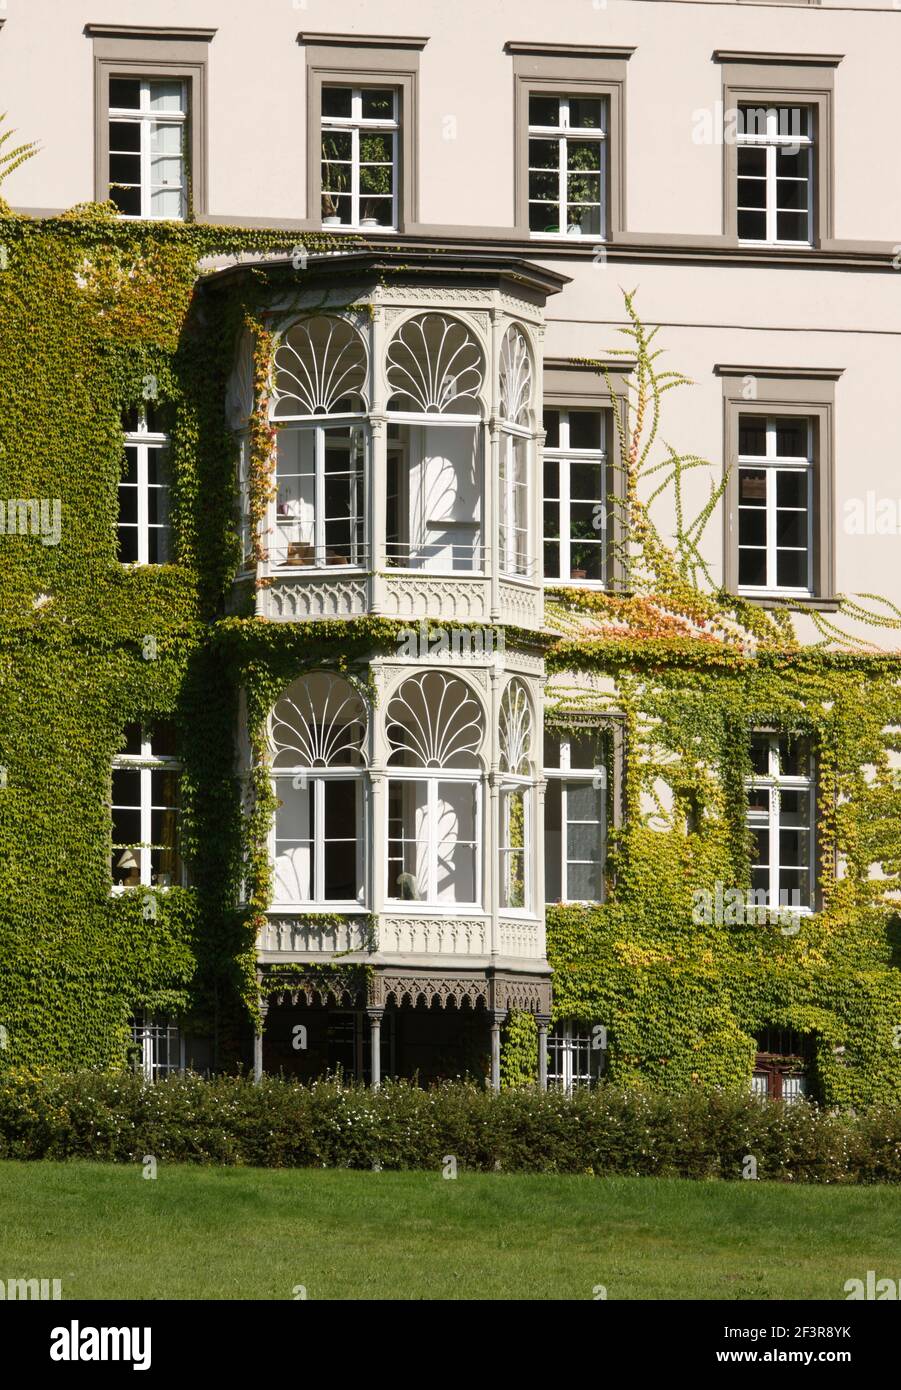 Villa Braunswerth, Erker, Engelskirchen, ehemalige Baumwollspinnerei Ermen & Engels, LVR-Industriemuseum Stock Photo